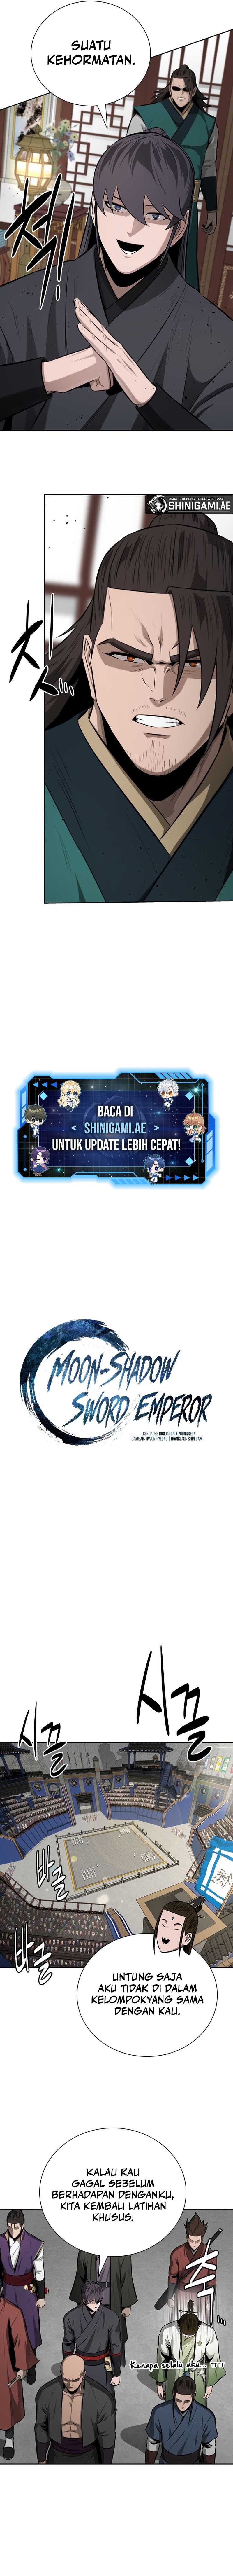 Moon-Shadow Sword Emperor Chapter 75